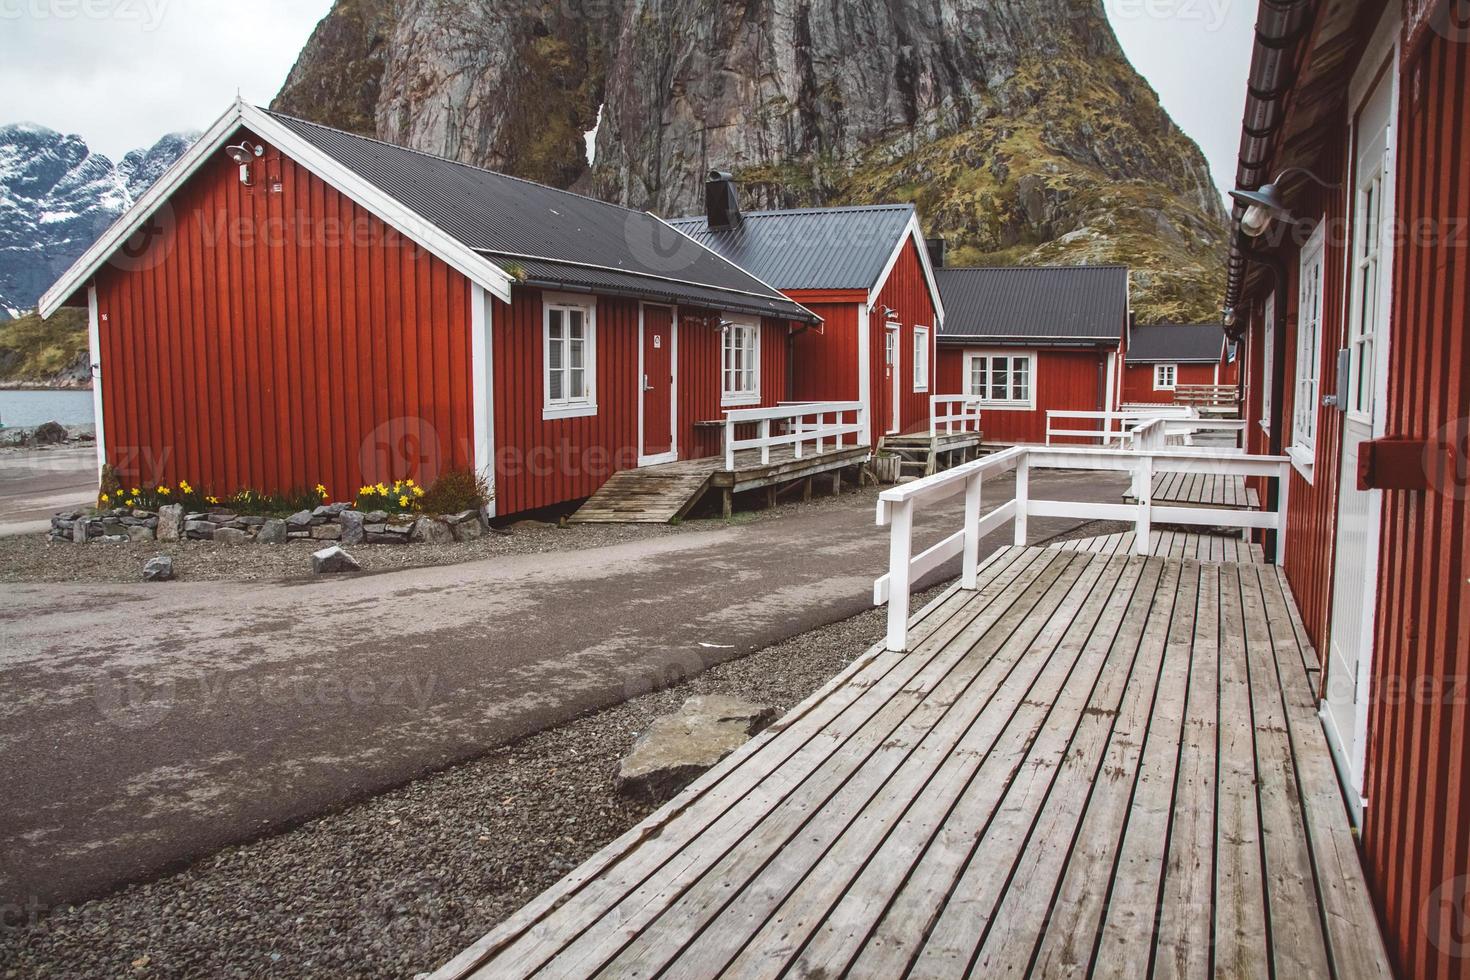 norge rorbuhus och berg klippor över fjordlandskap skandinavisk resevy lofoten öar. naturligt skandinaviskt landskap. foto